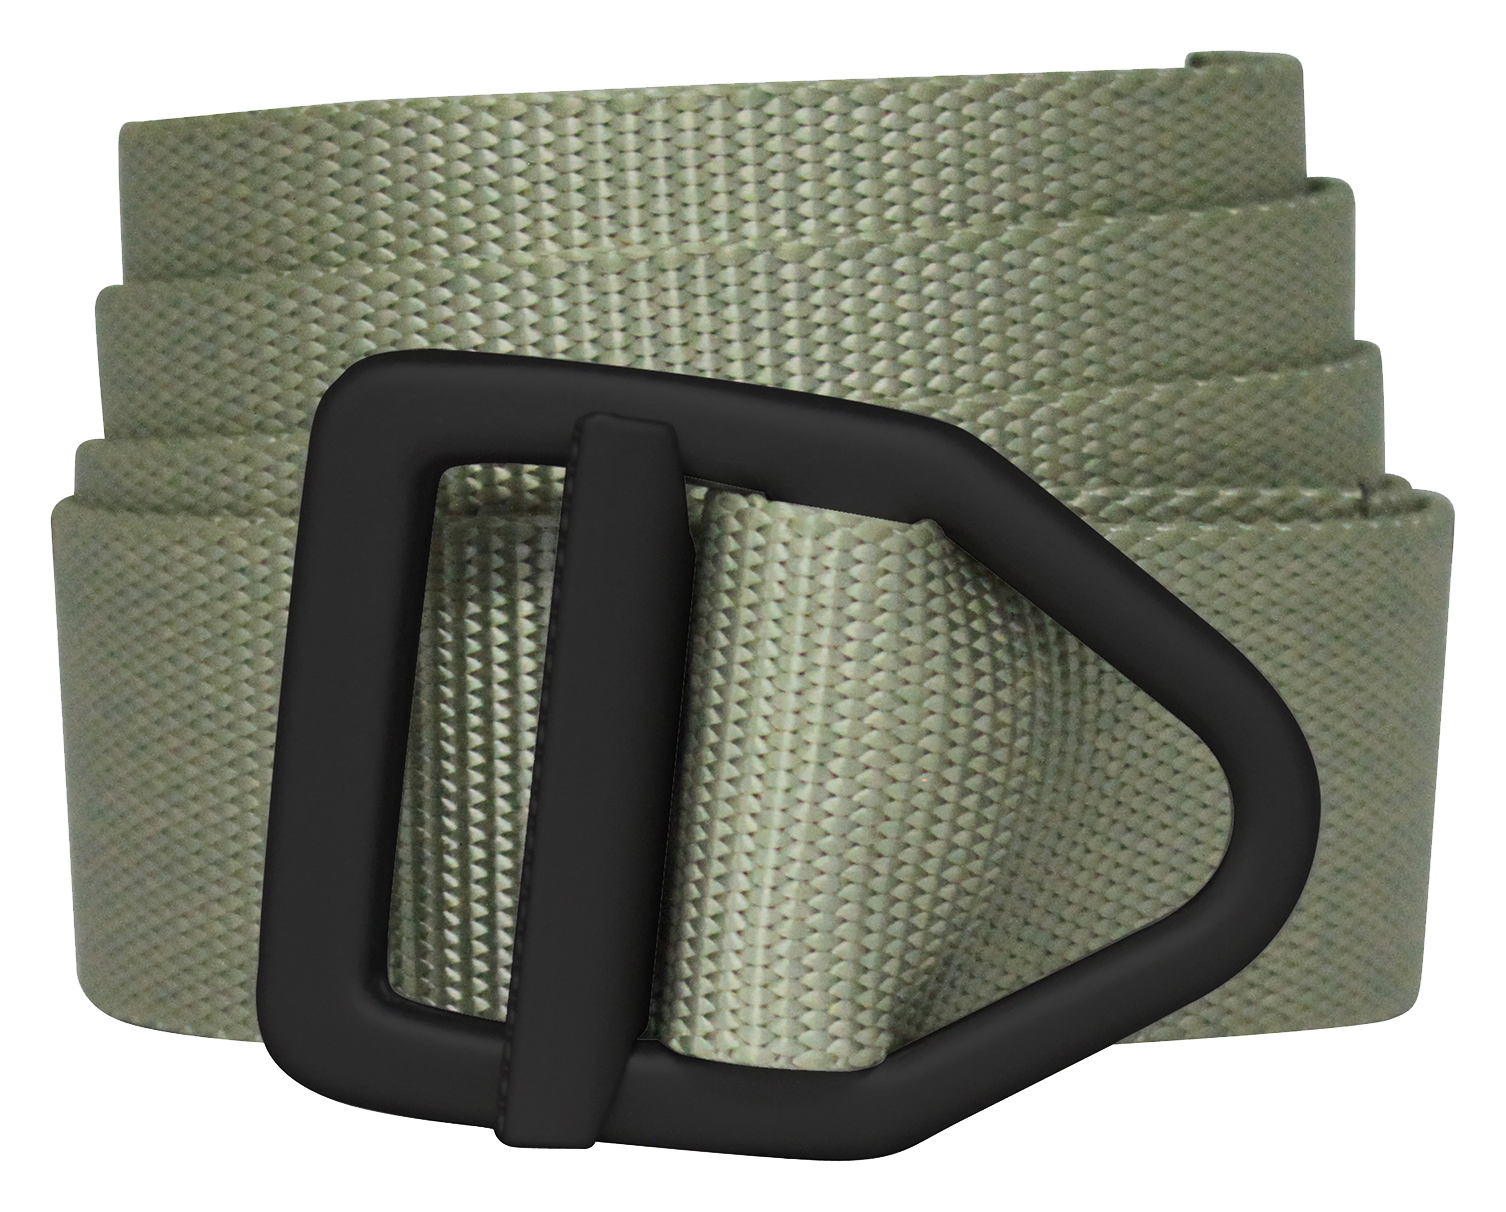 Bison Designs Last Chance Light Duty Belt for Men - Olive/Black - 2XL